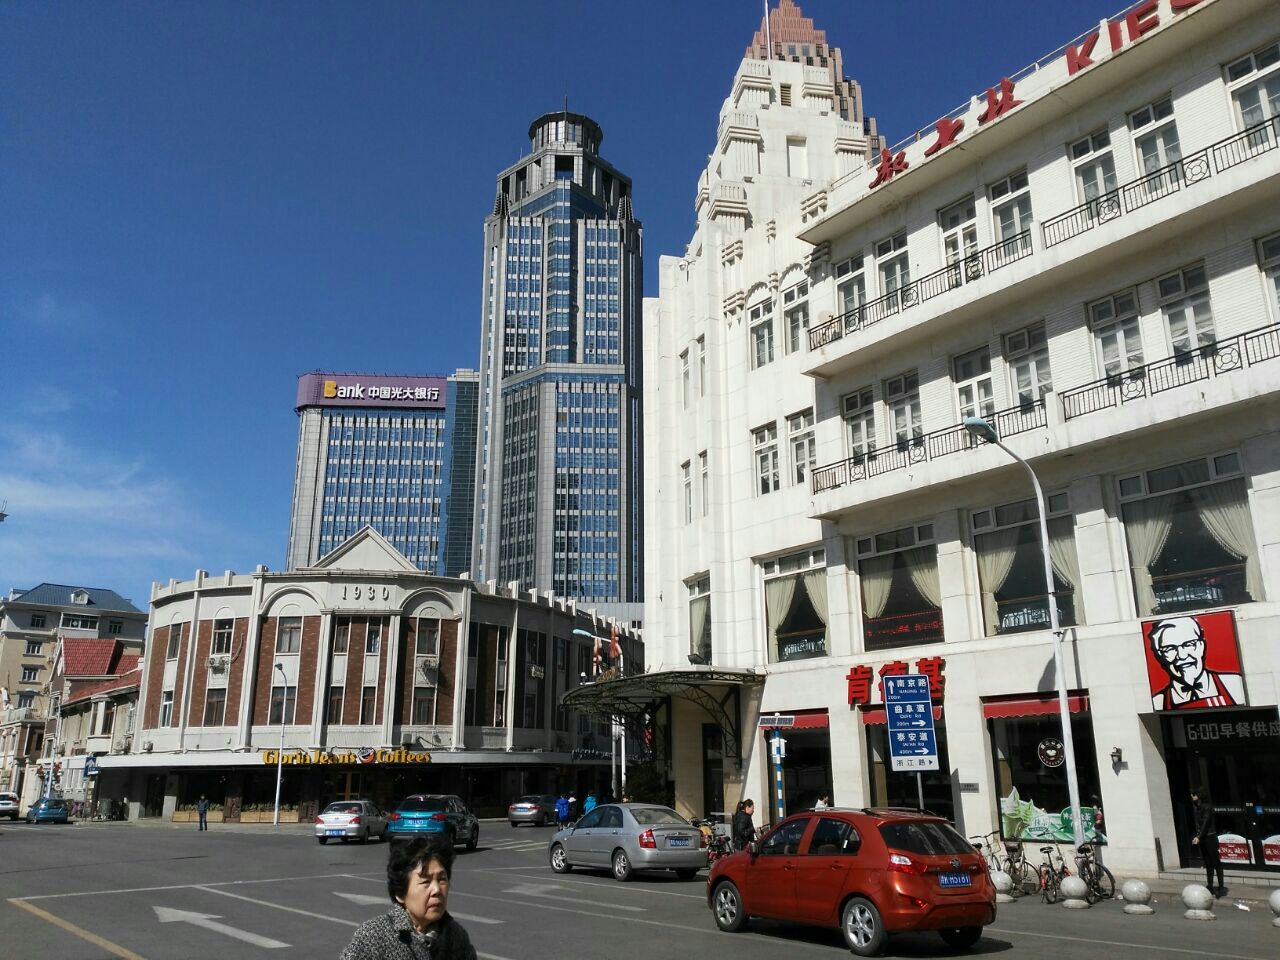 【携程攻略】天津天津音乐厅景点,目的地是小白楼，一出地铁口先吸引眼球的是这座音乐厅。整个建筑结构…